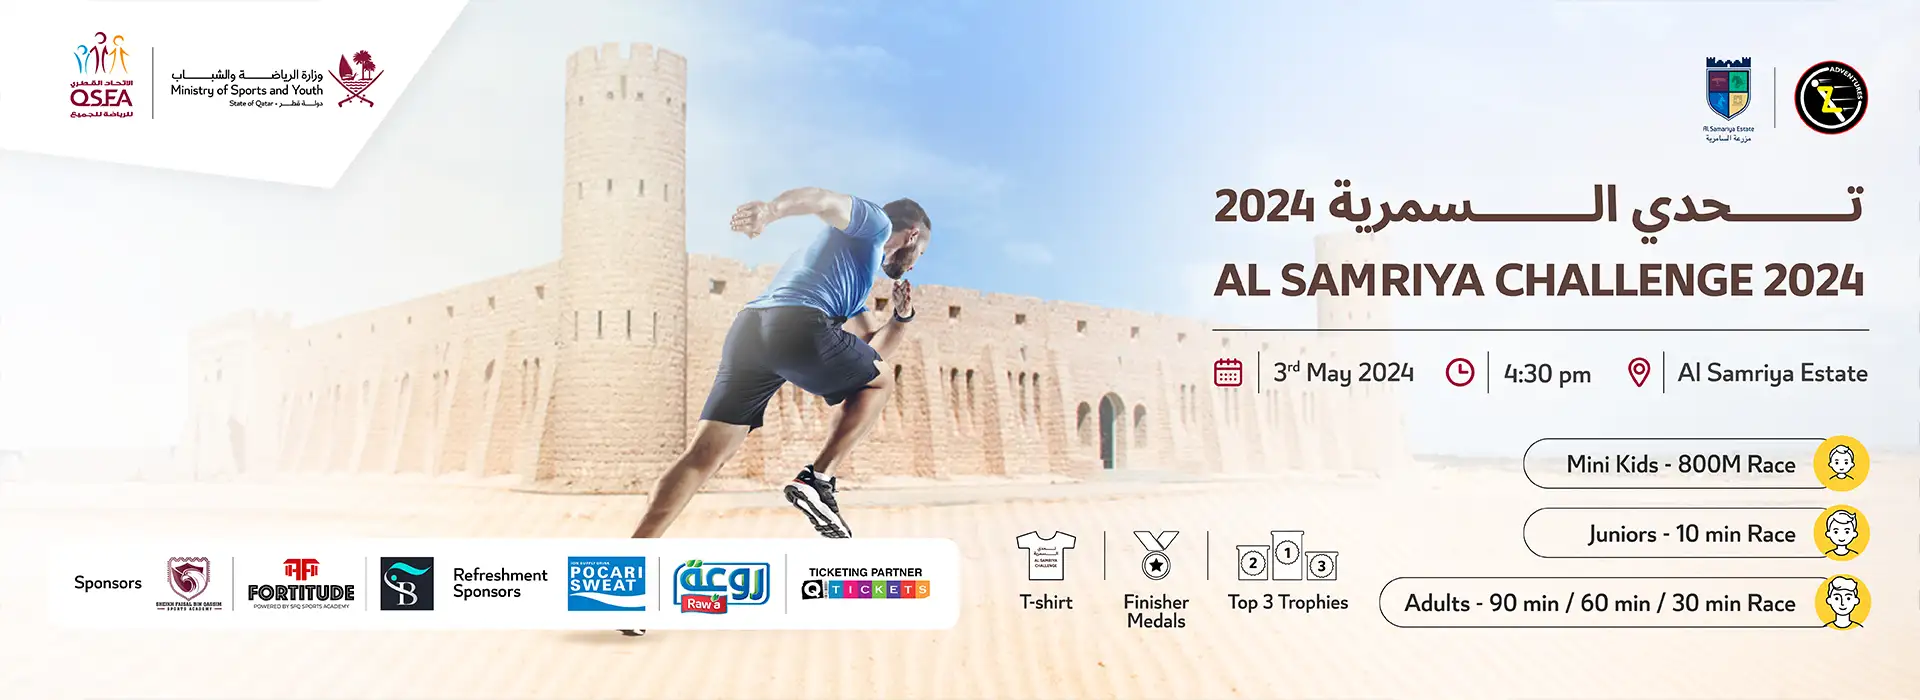 Al Samriya Challenge 2024